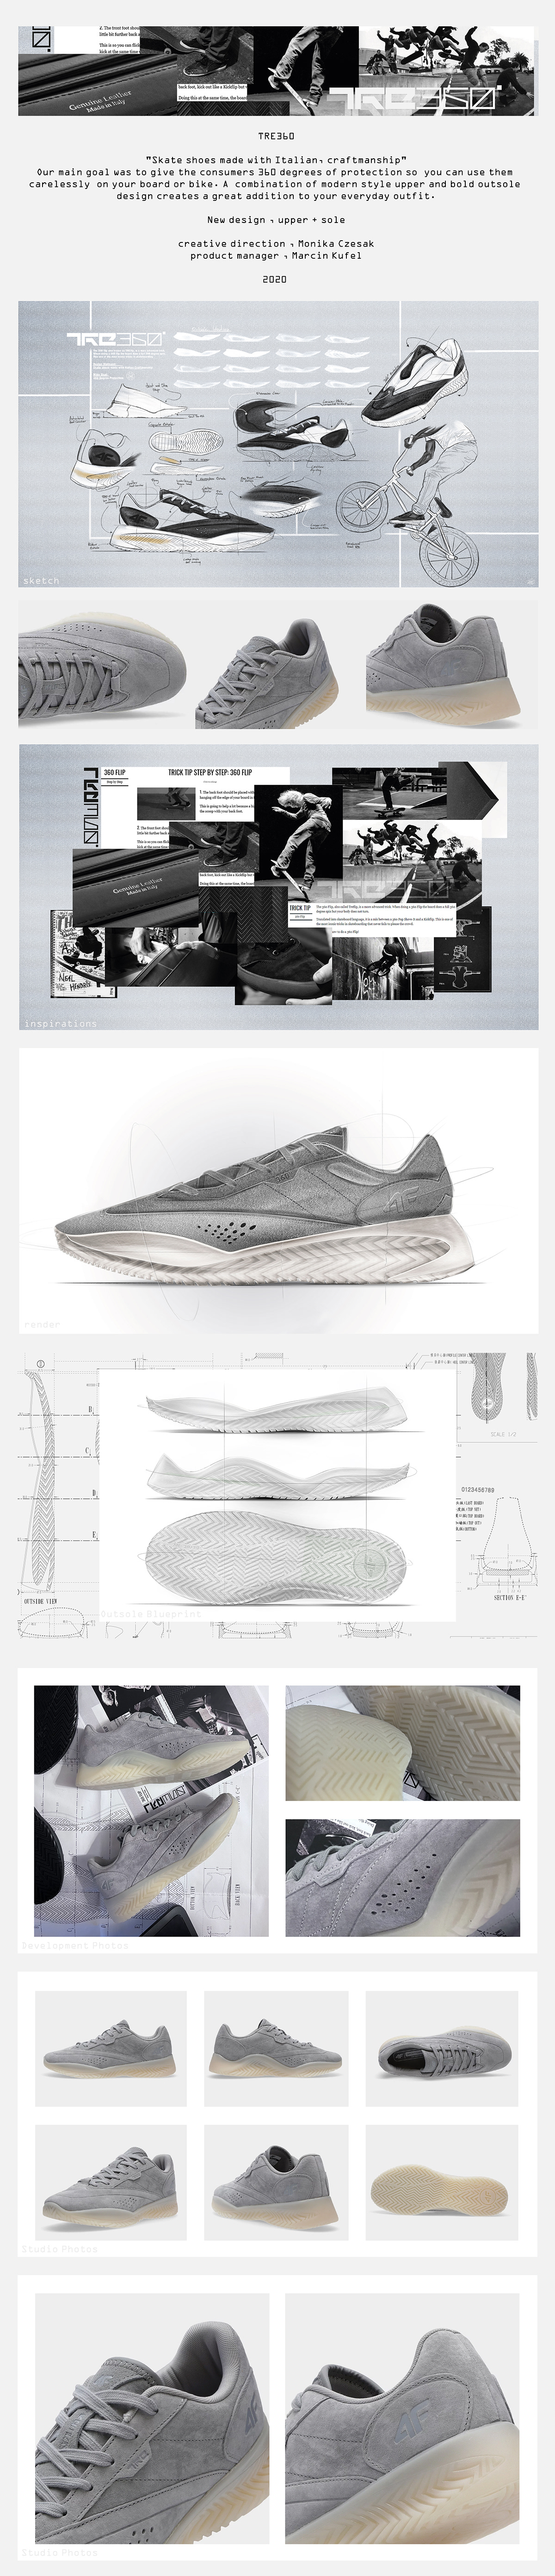 Blueprint design footwear footwear design skate skateboard sketch sneakers social media